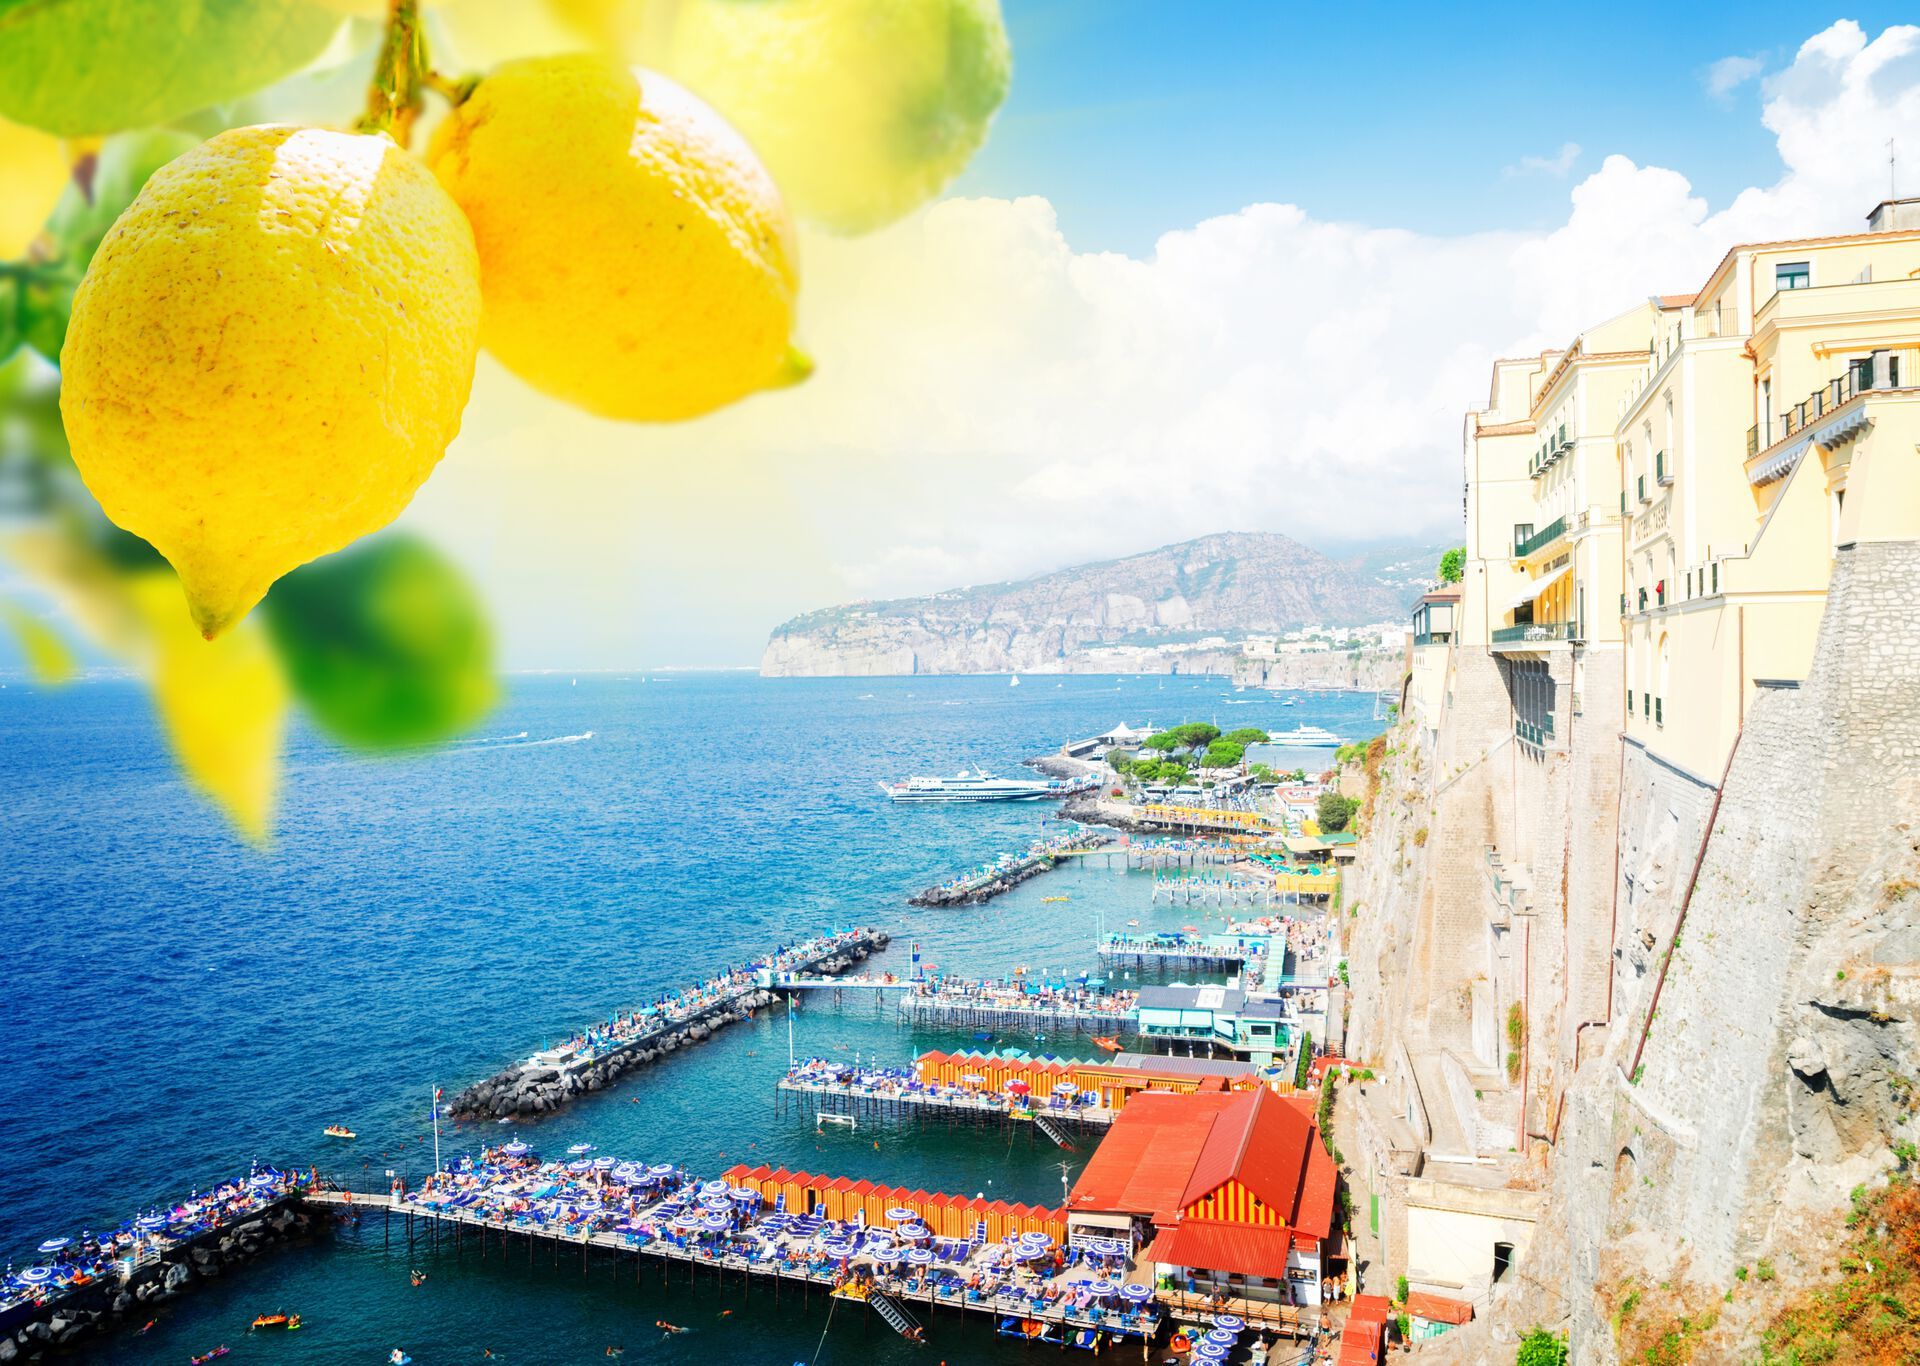 Zitronen und Pasta am Golf von Neapel- Standortrundreise an der traumhaften Amalfiküste